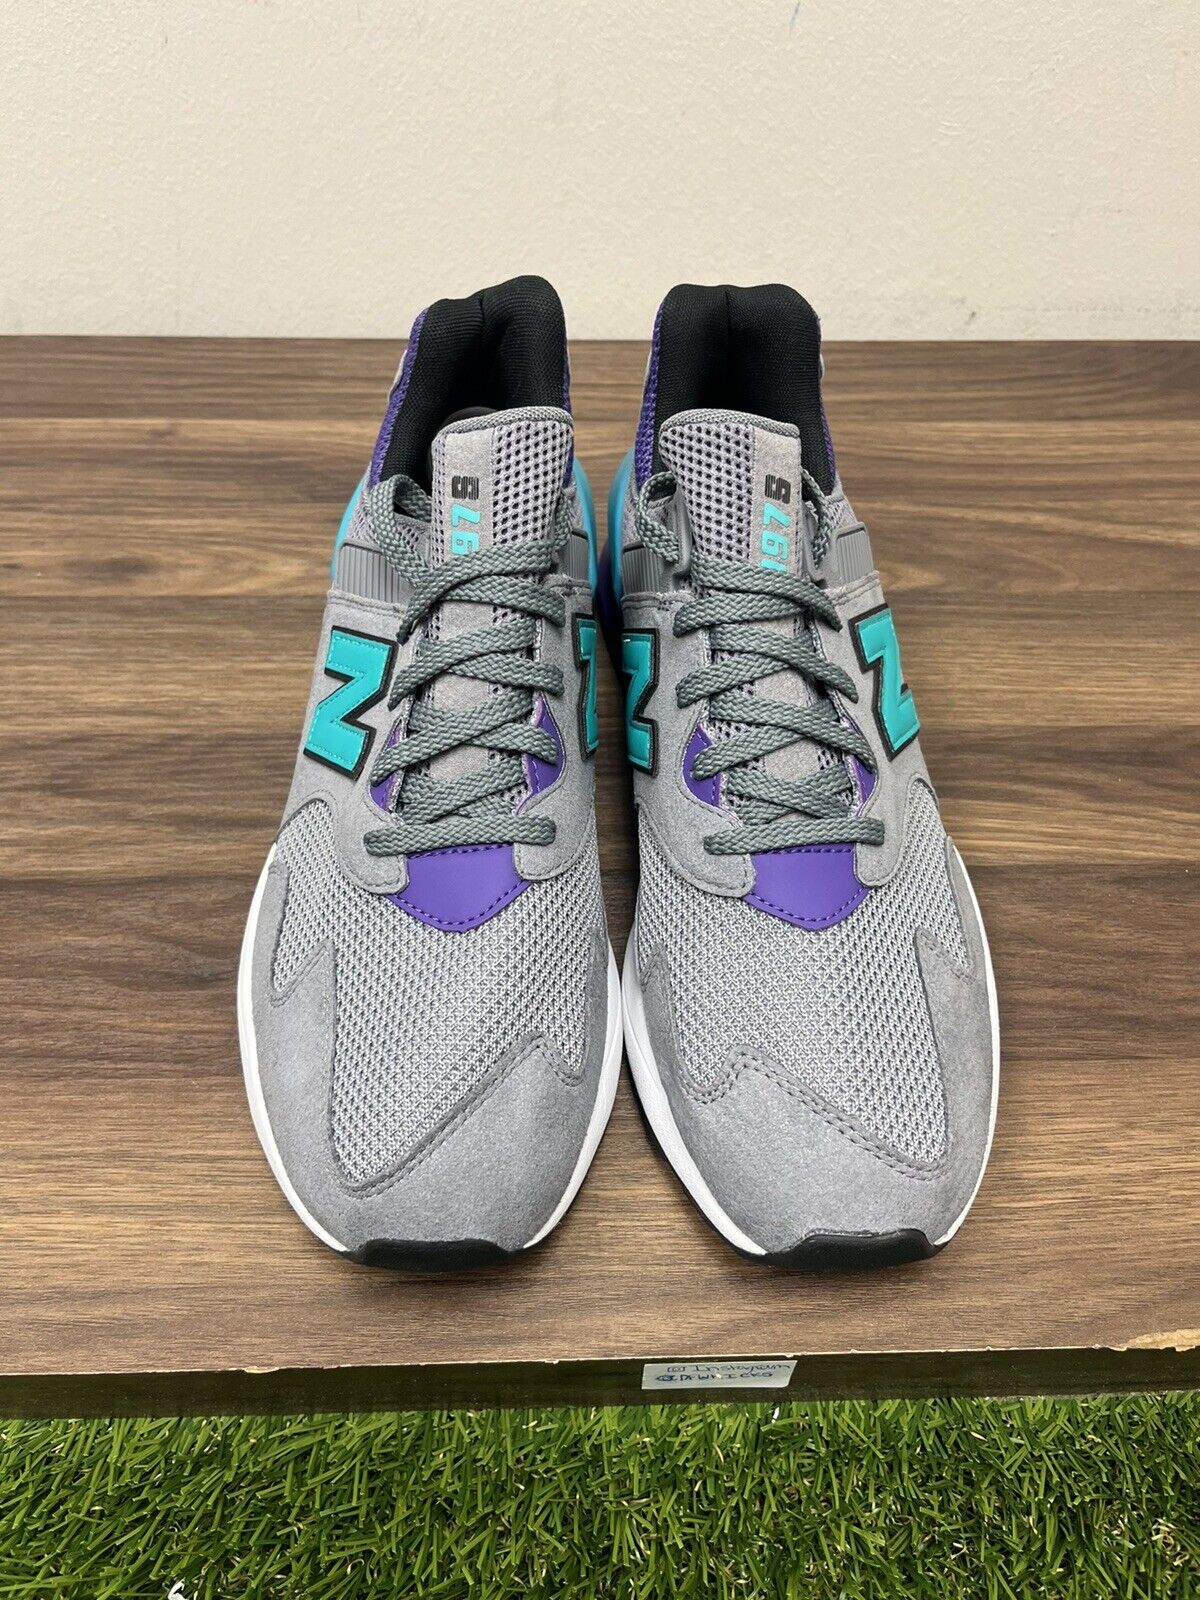 Size 10.5 - New Balance 997 Gray Purple - MS997JKC